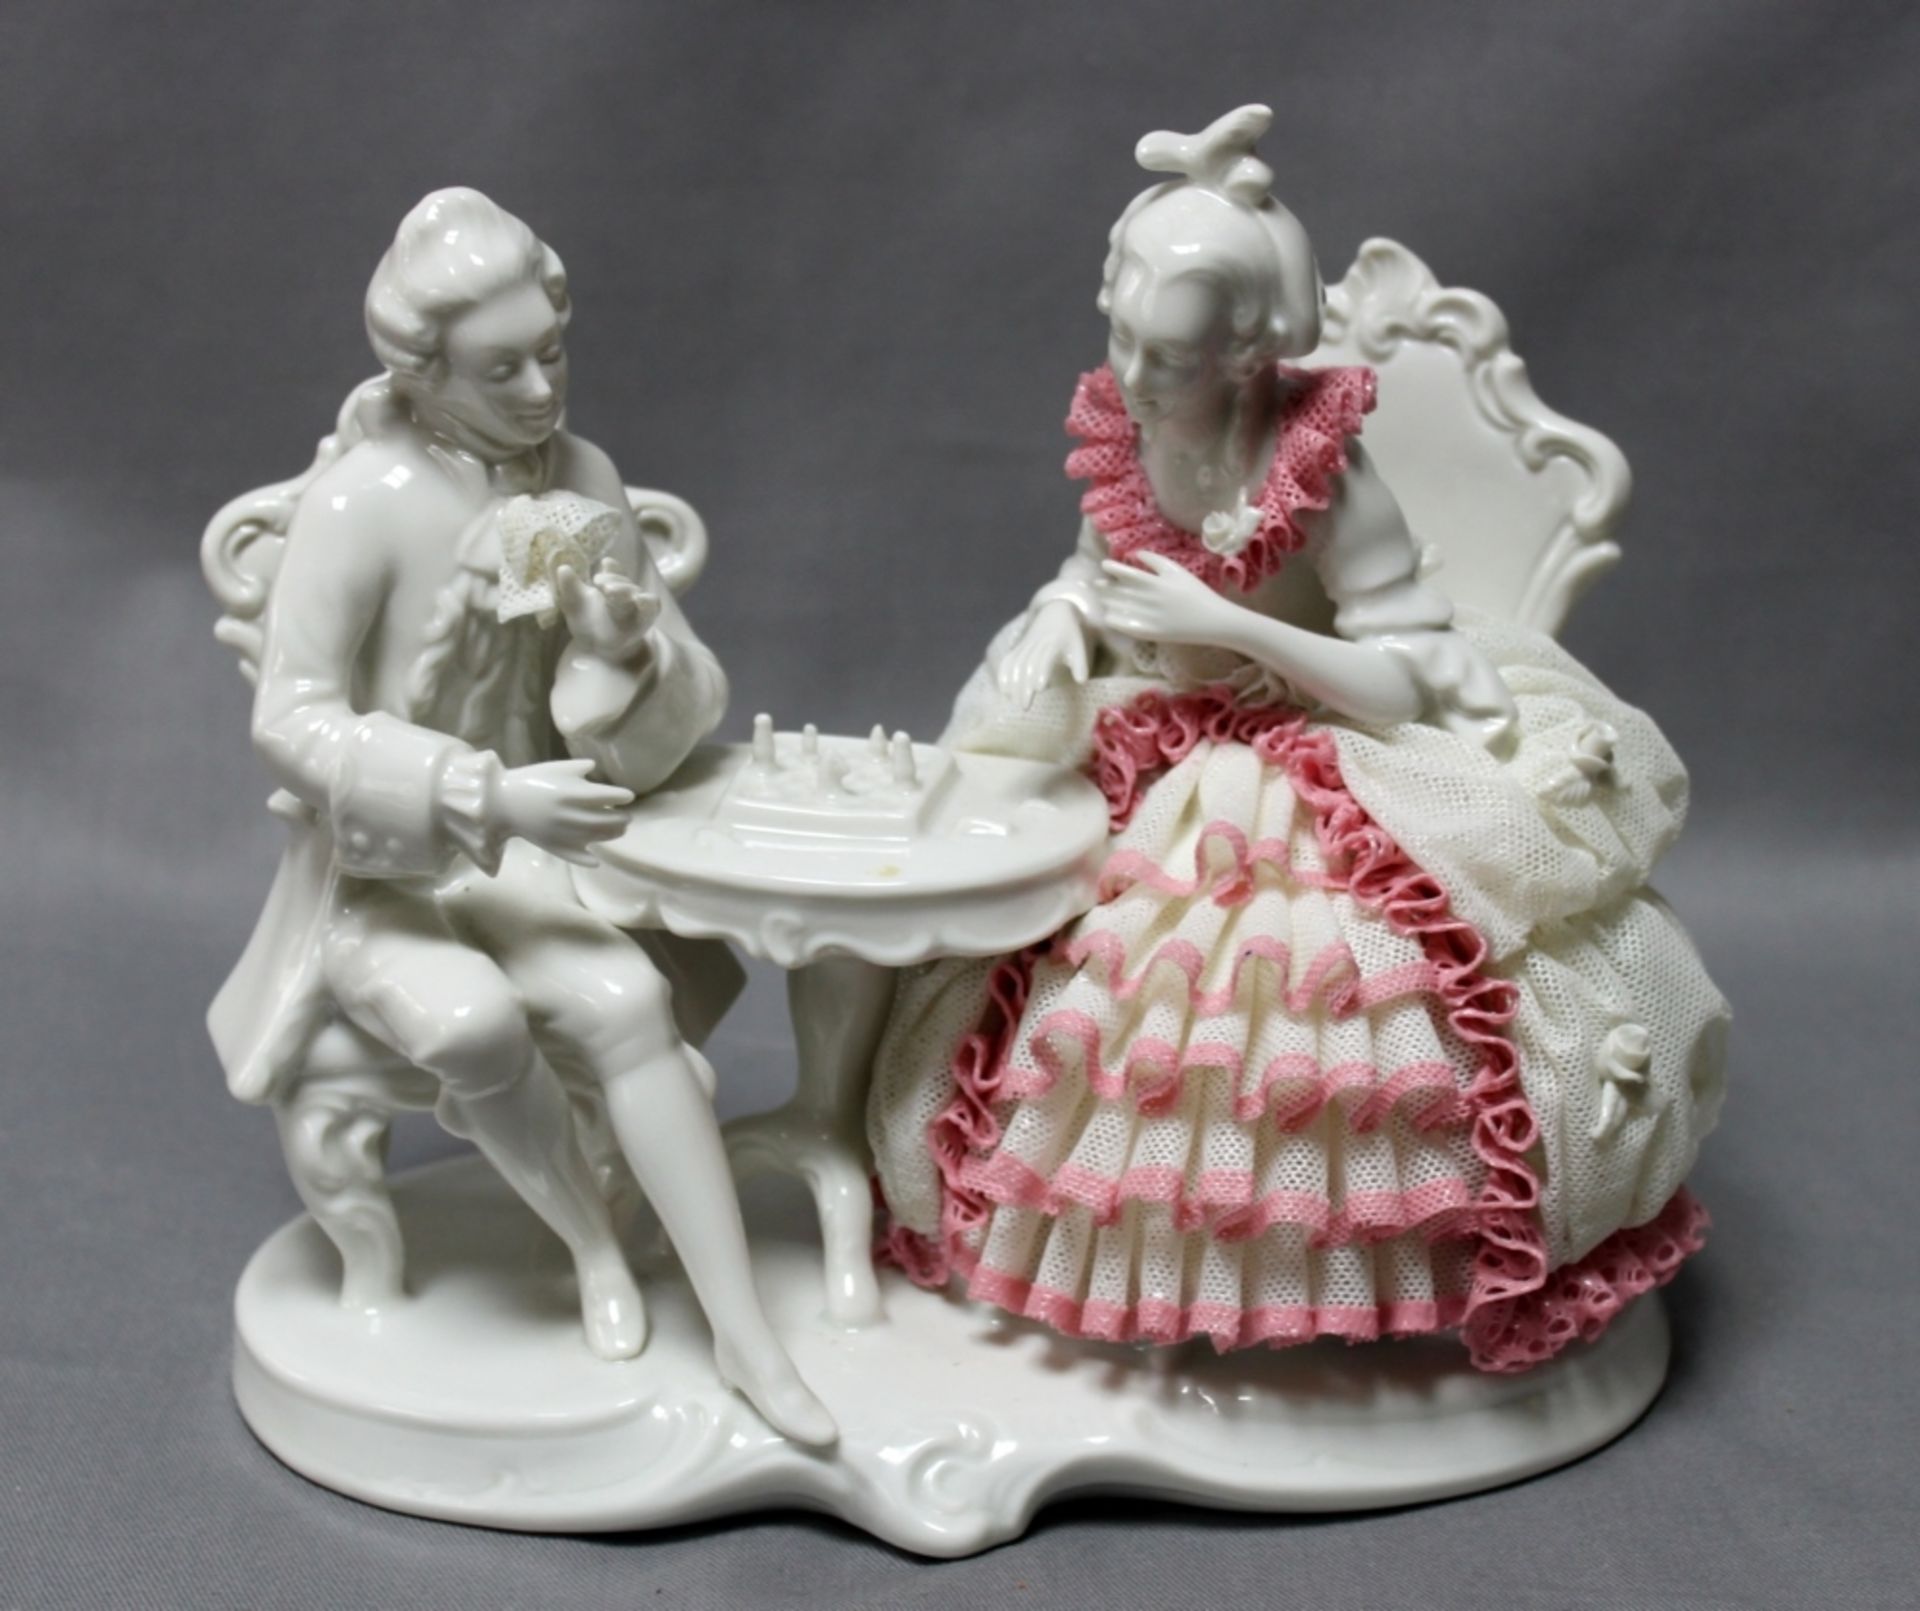 Porzellanfiguren. Schachspielendes Rokokopaar. Mit der Porzellanmarke „Krone S Graefenthal